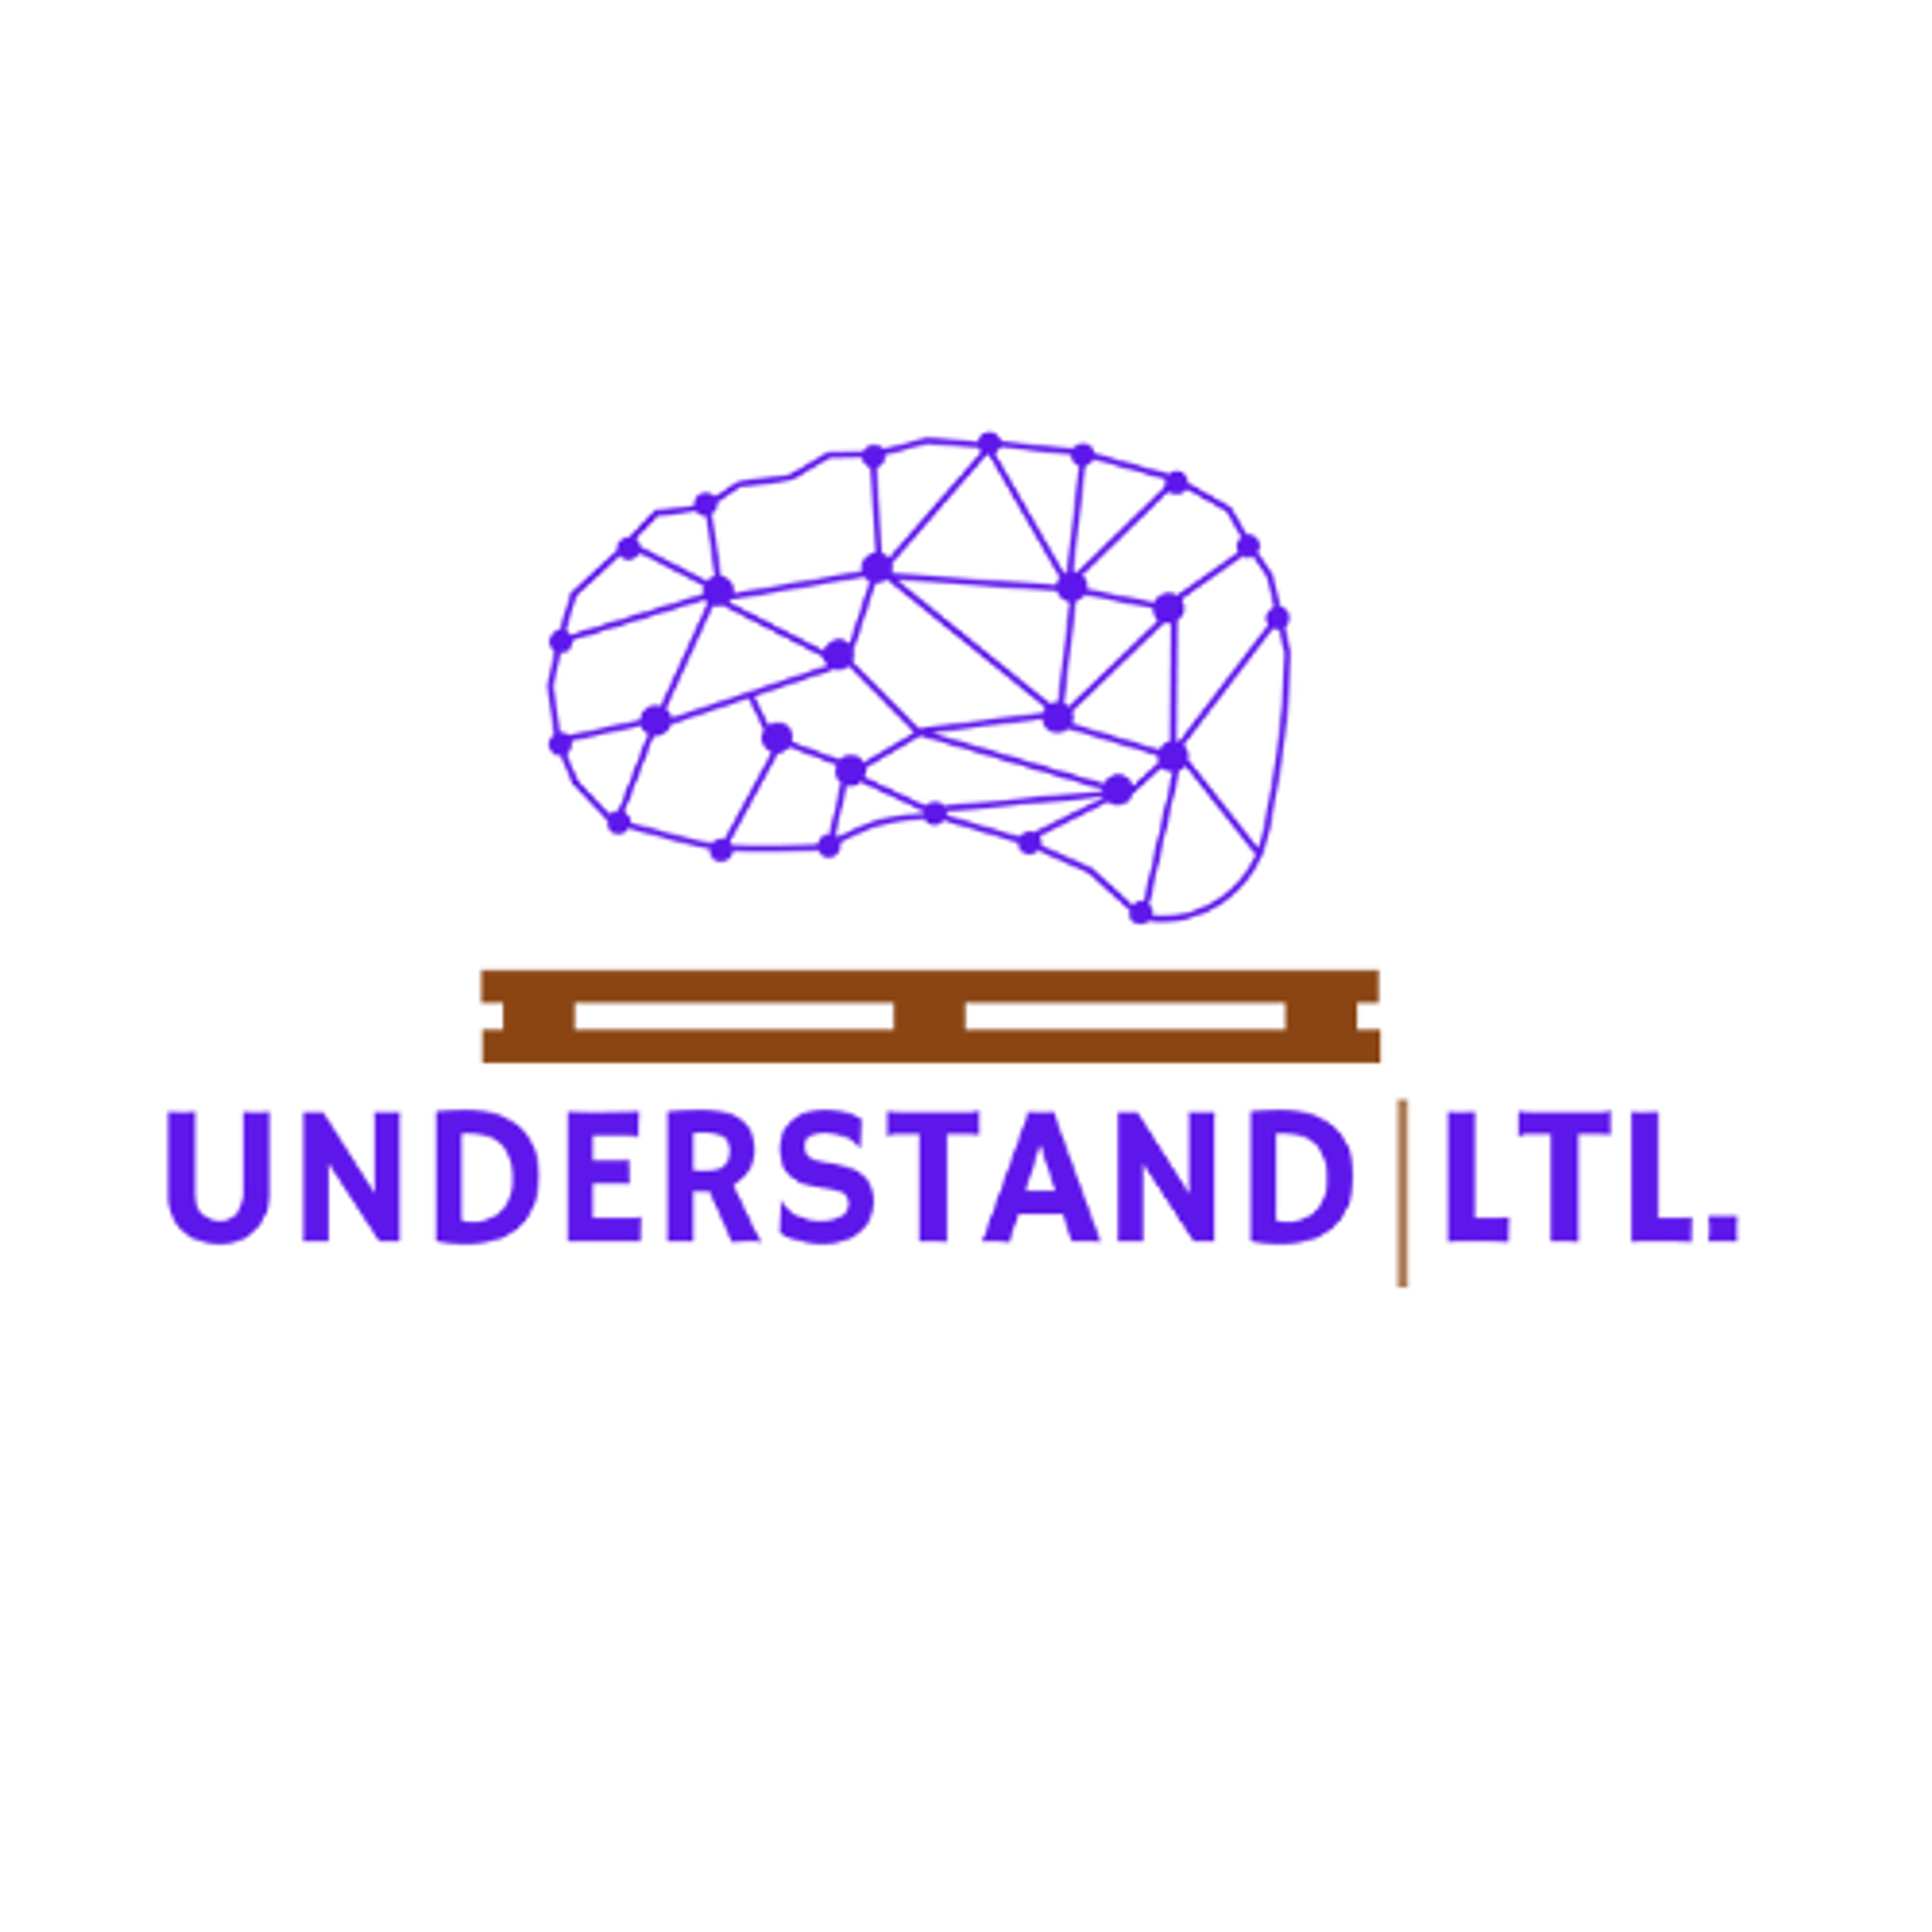 Understand LTL